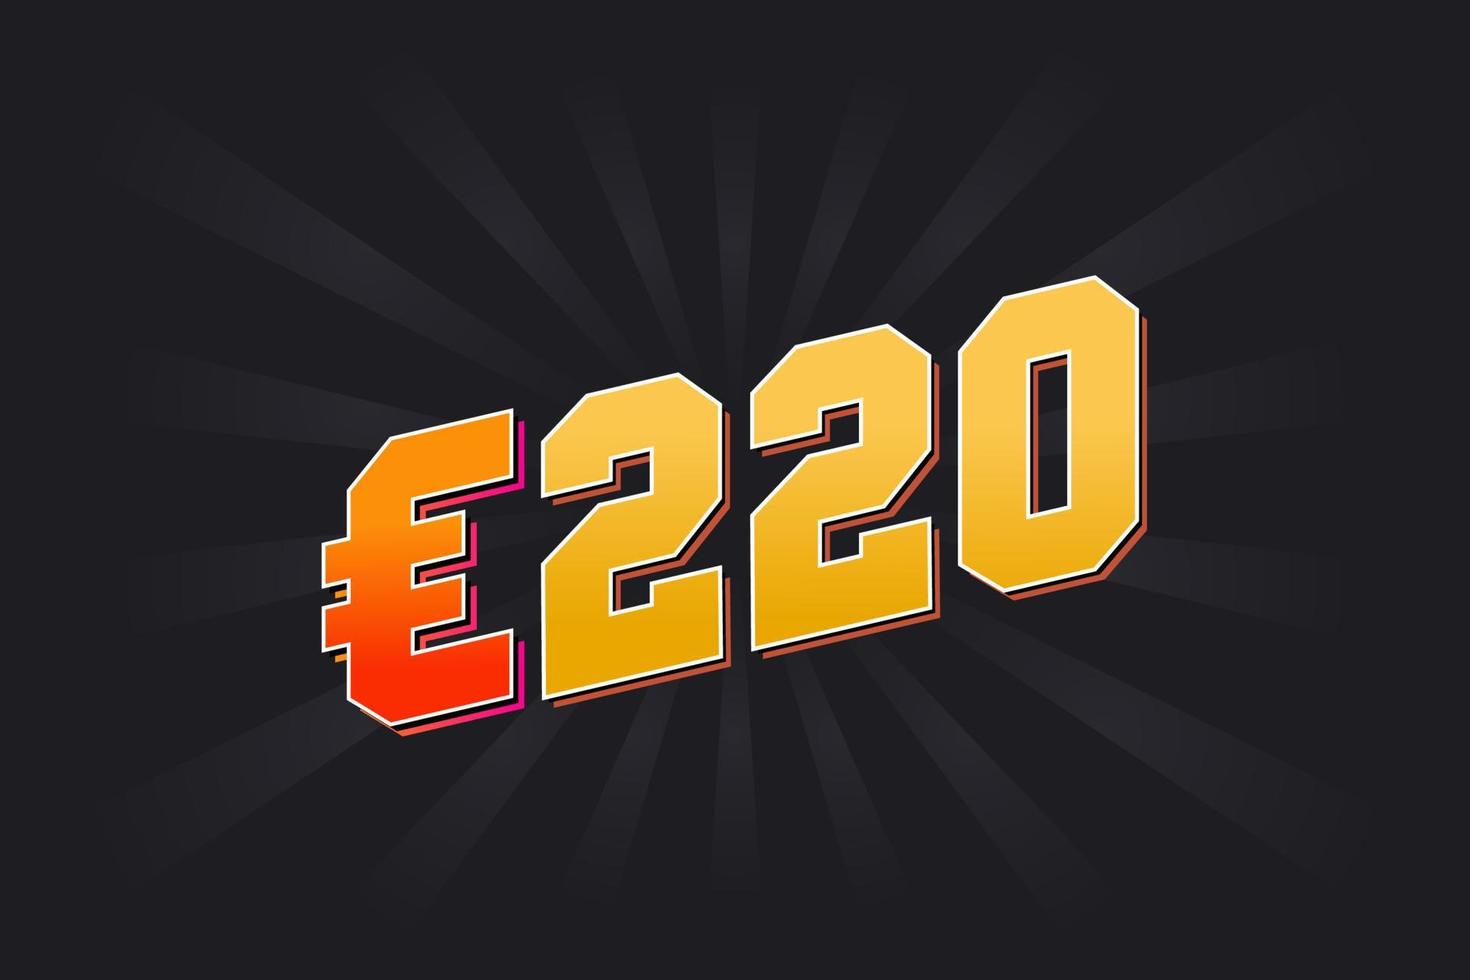 220 Euro Currency vector text symbol. 220 Euro European Union Money stock vector